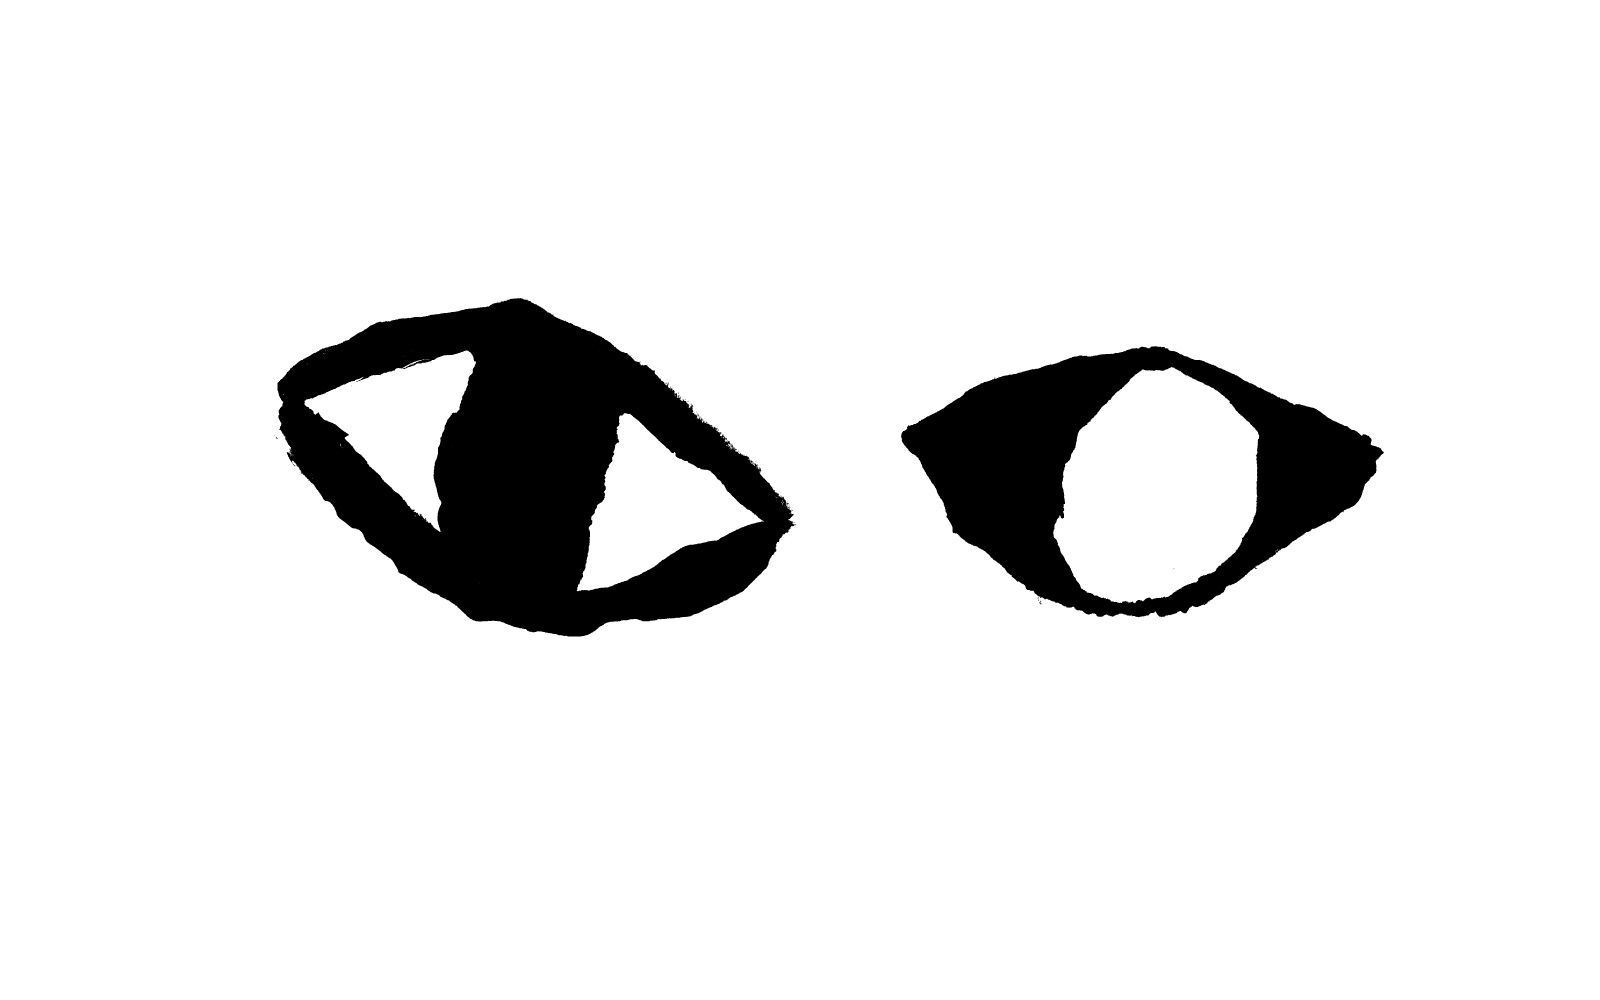 【イラスト】こちらを見つめるふたつの目。左は黒目、右は白黒が逆転して黒目が白目。